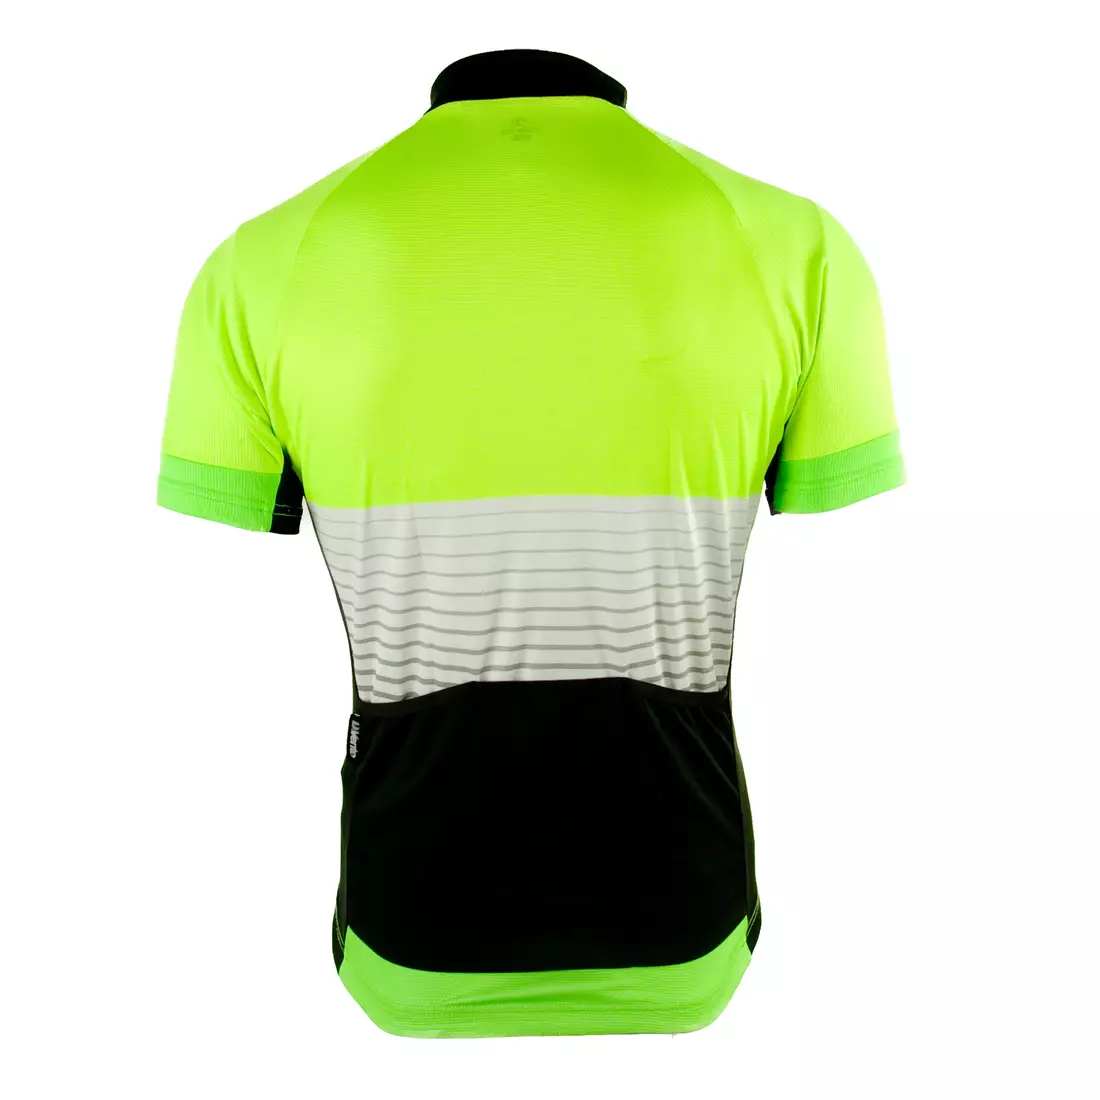 DEKO DK-1018-002 Fluoro-green-black cycling jersey